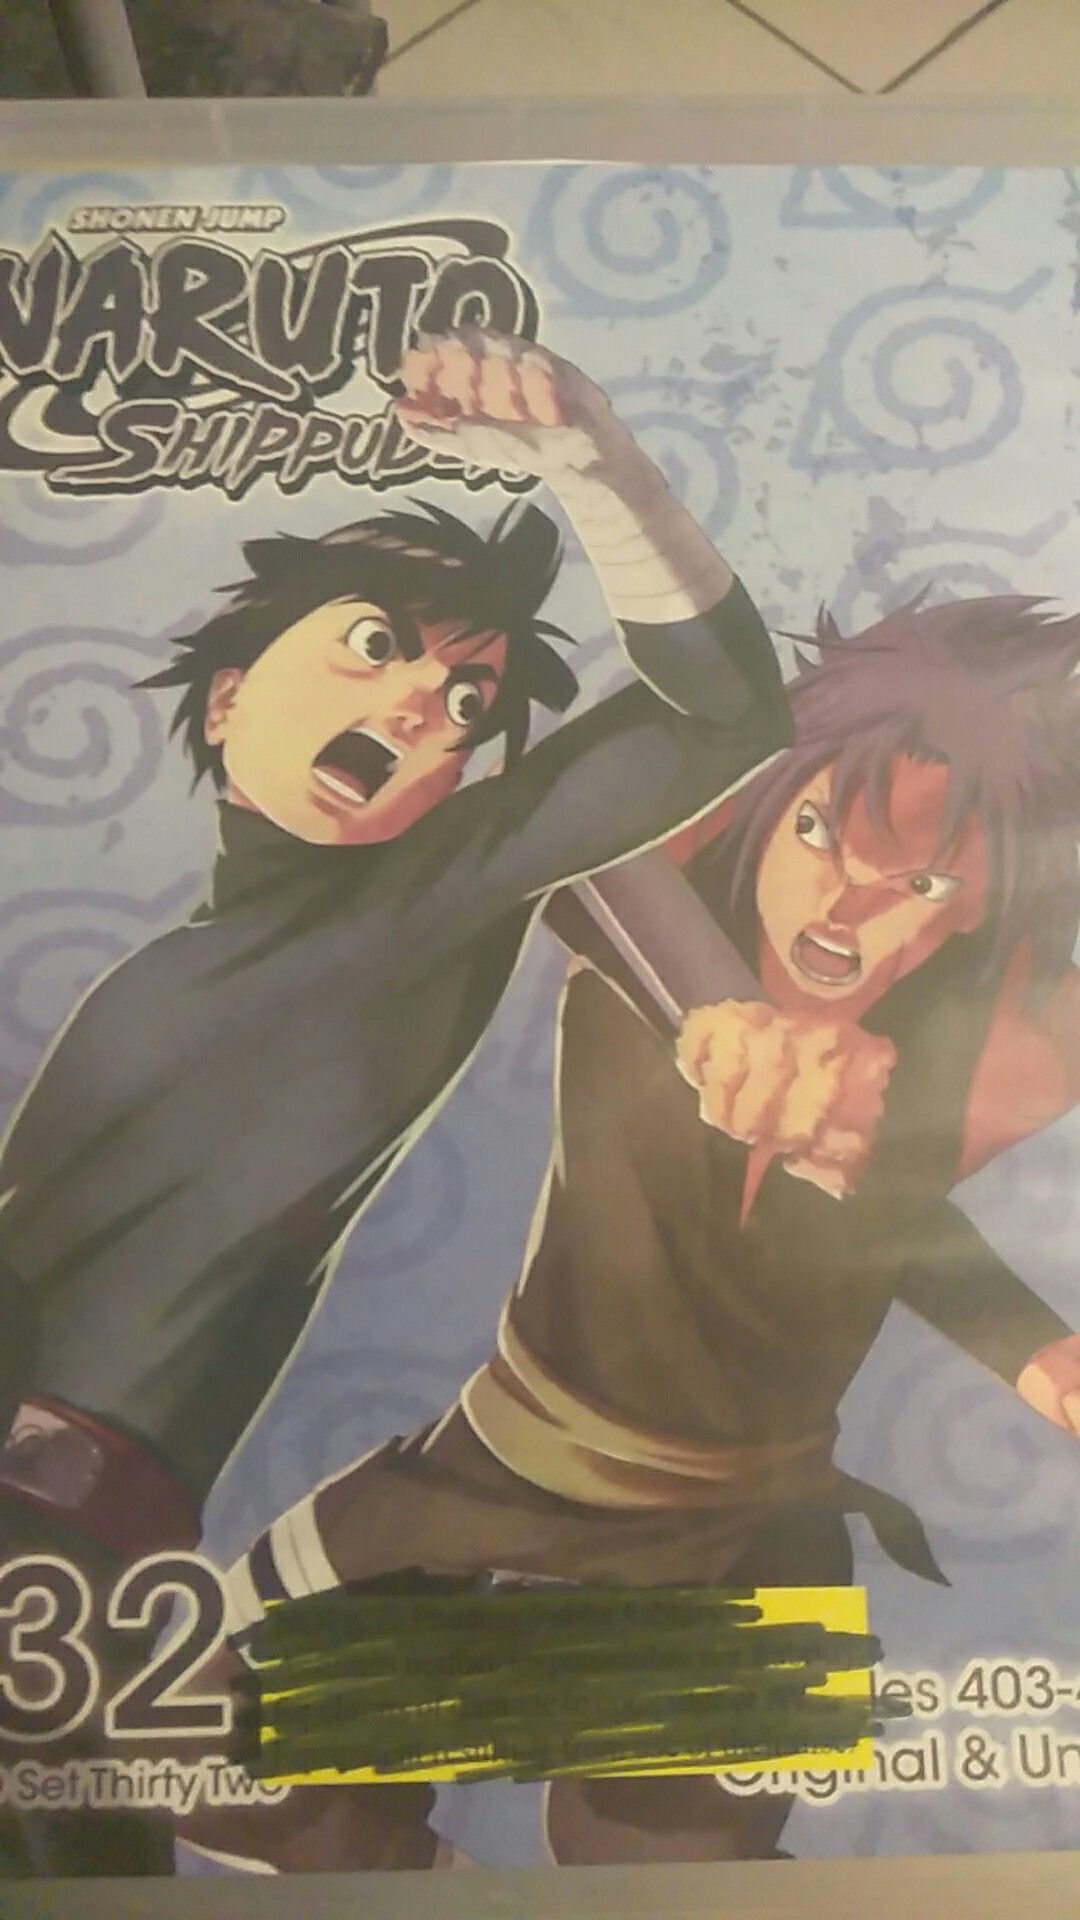 Naruto Shippuden DVD set 32